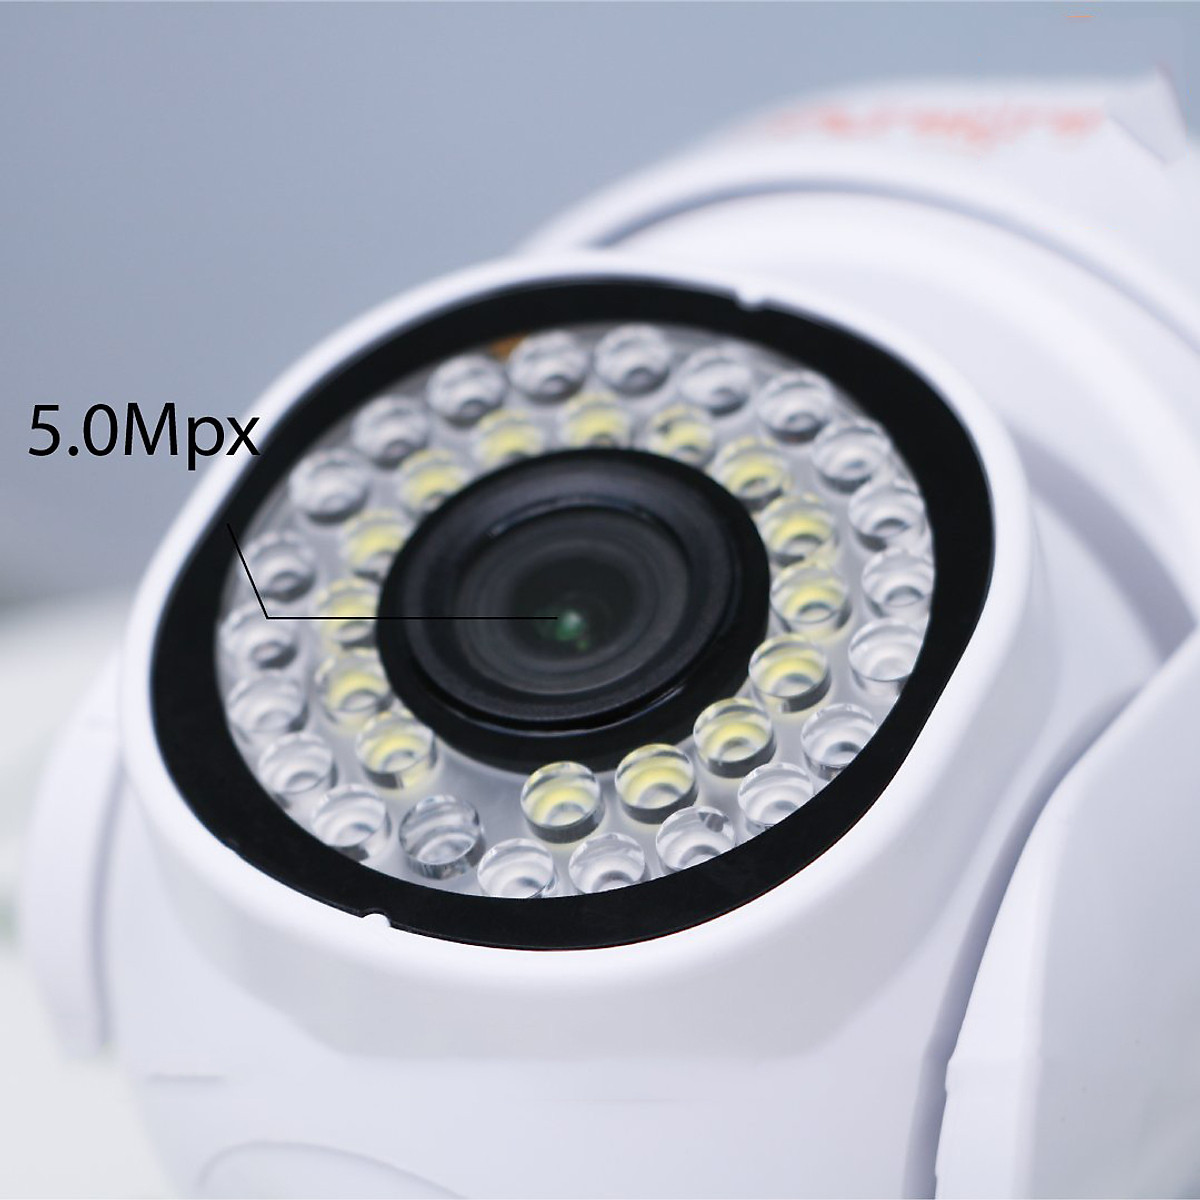 Camera IP Ngoài Trời YOOSEE Mini 36 Bóng LED, FullHD, Chống nước Chống bụi, ban đêm có màu - Hàng Nhập Khẩu